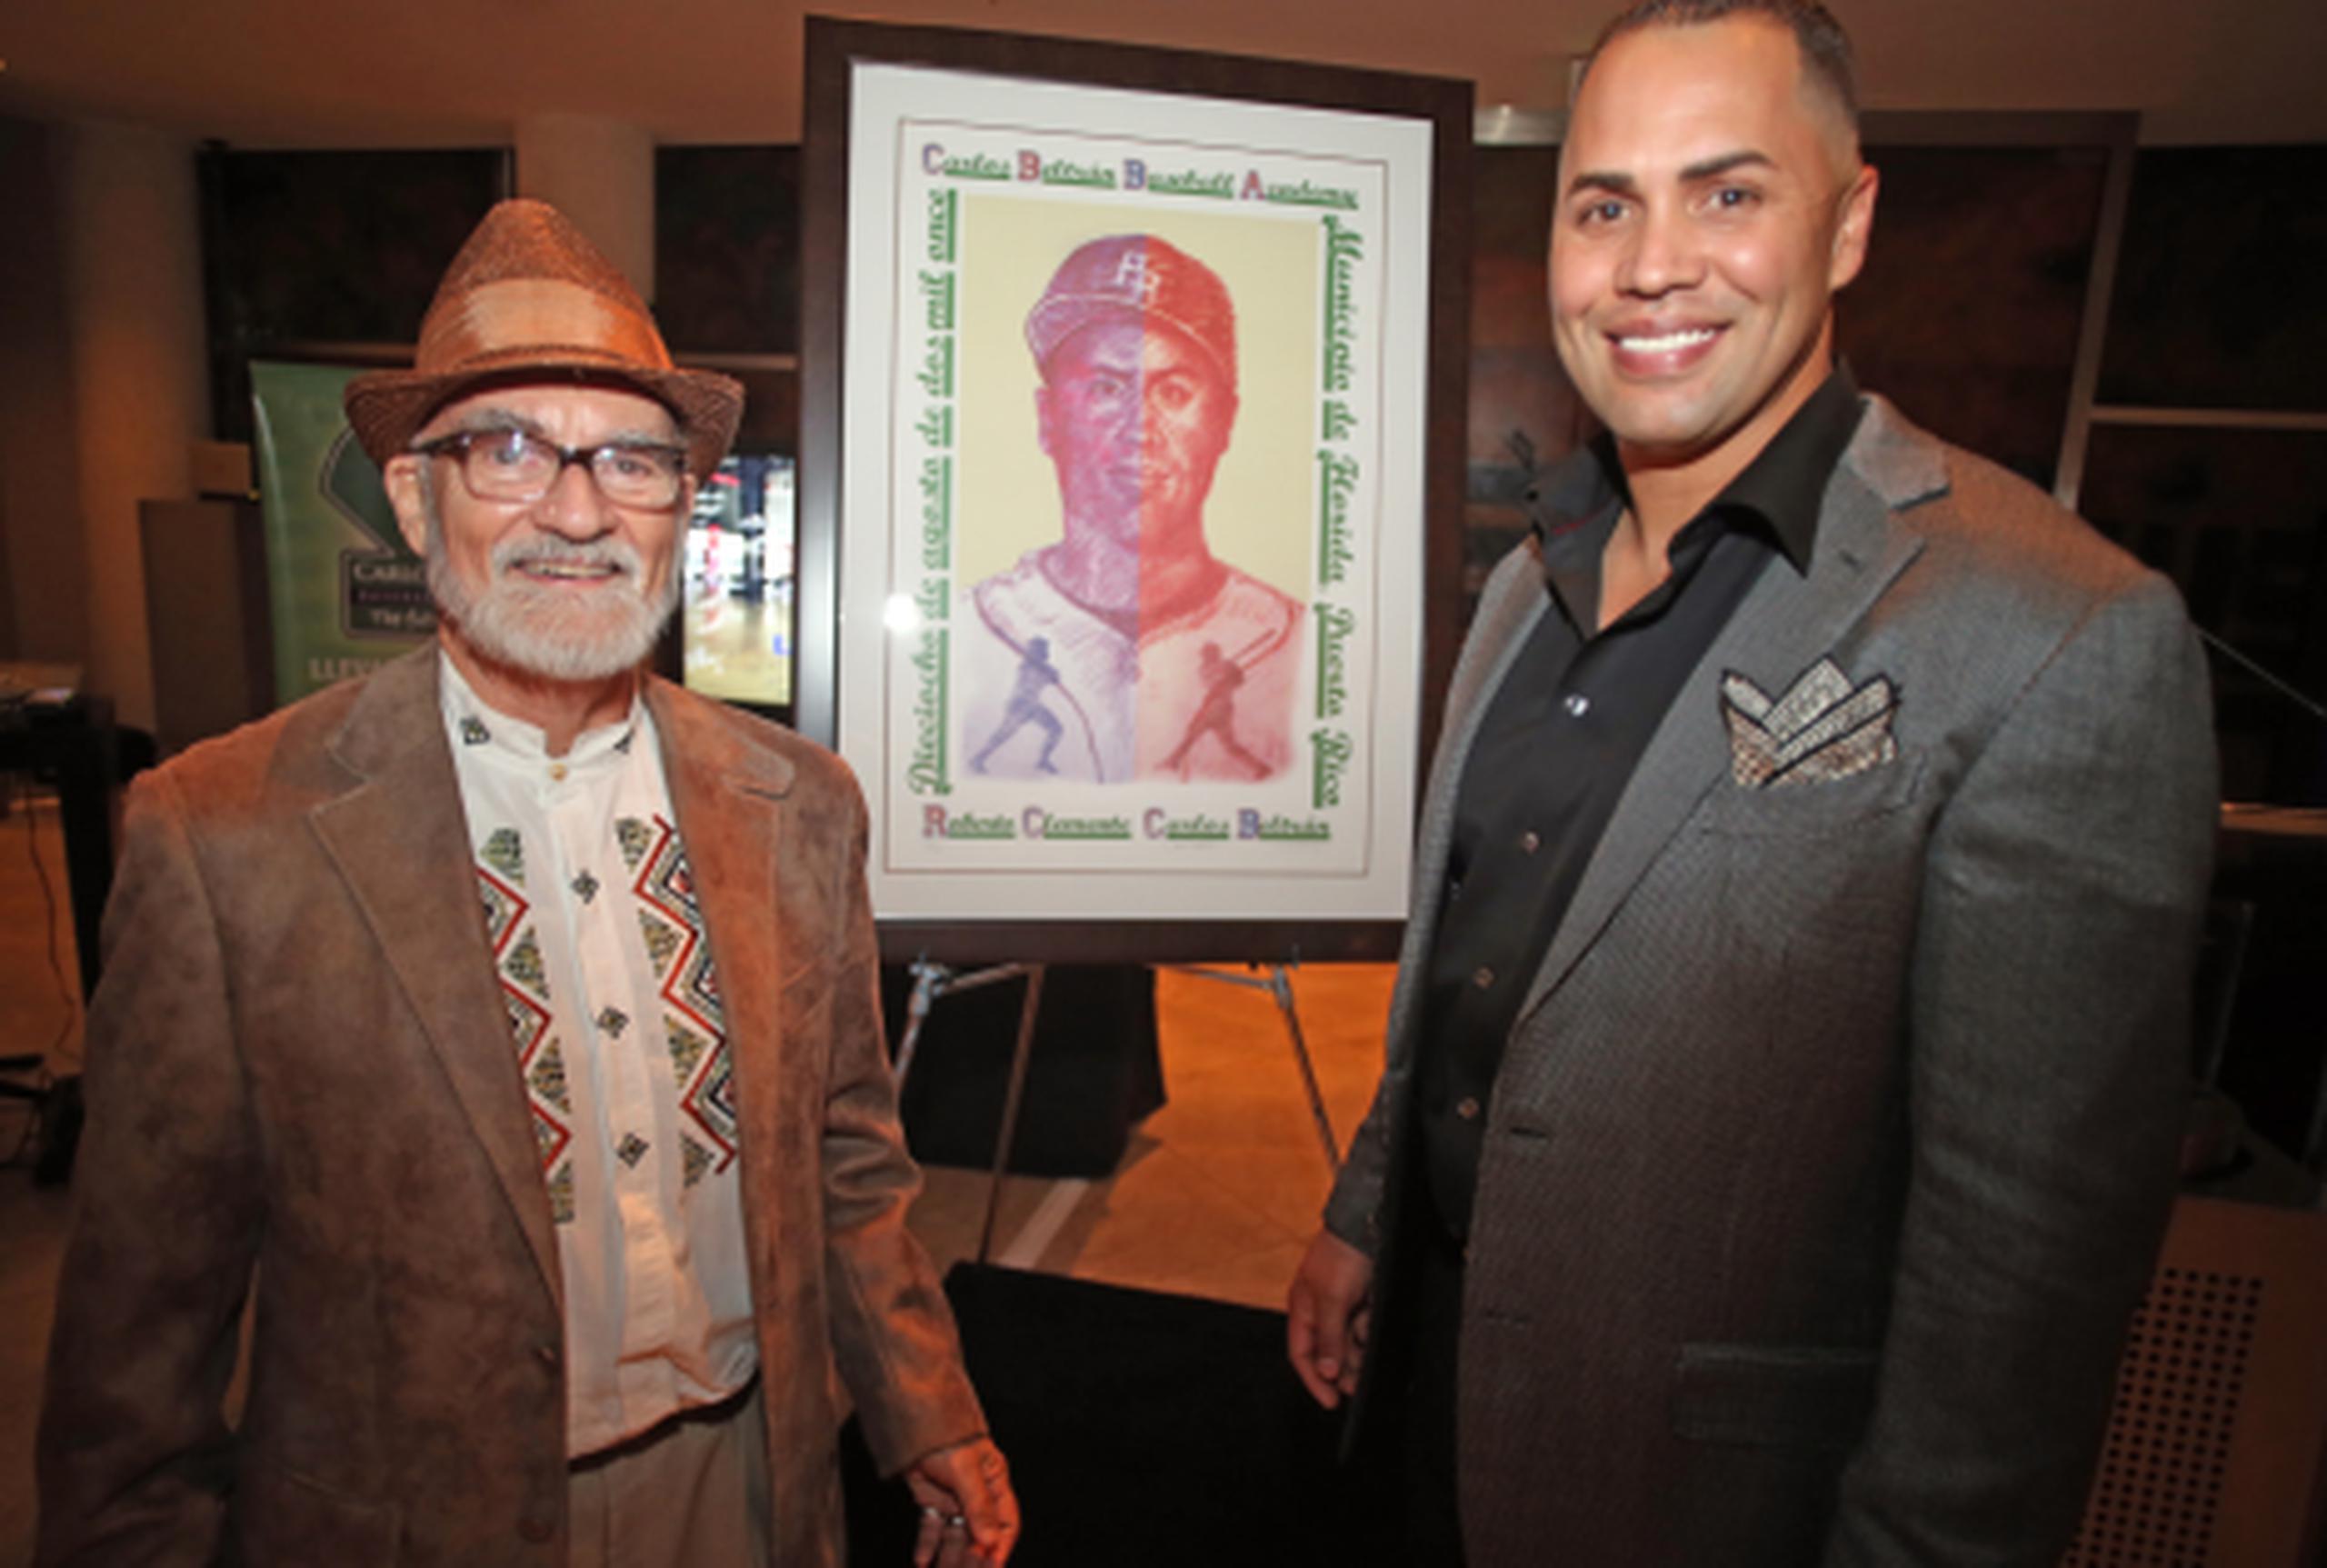 El reconocido pintor puertorriqueño Antonio Martorell fue el encargado de crear la imagen en una serigrafía para la recaudación de fondos de la Carlos Beltrán Baseball Academy. (david.villafane@gfrmedia.com)